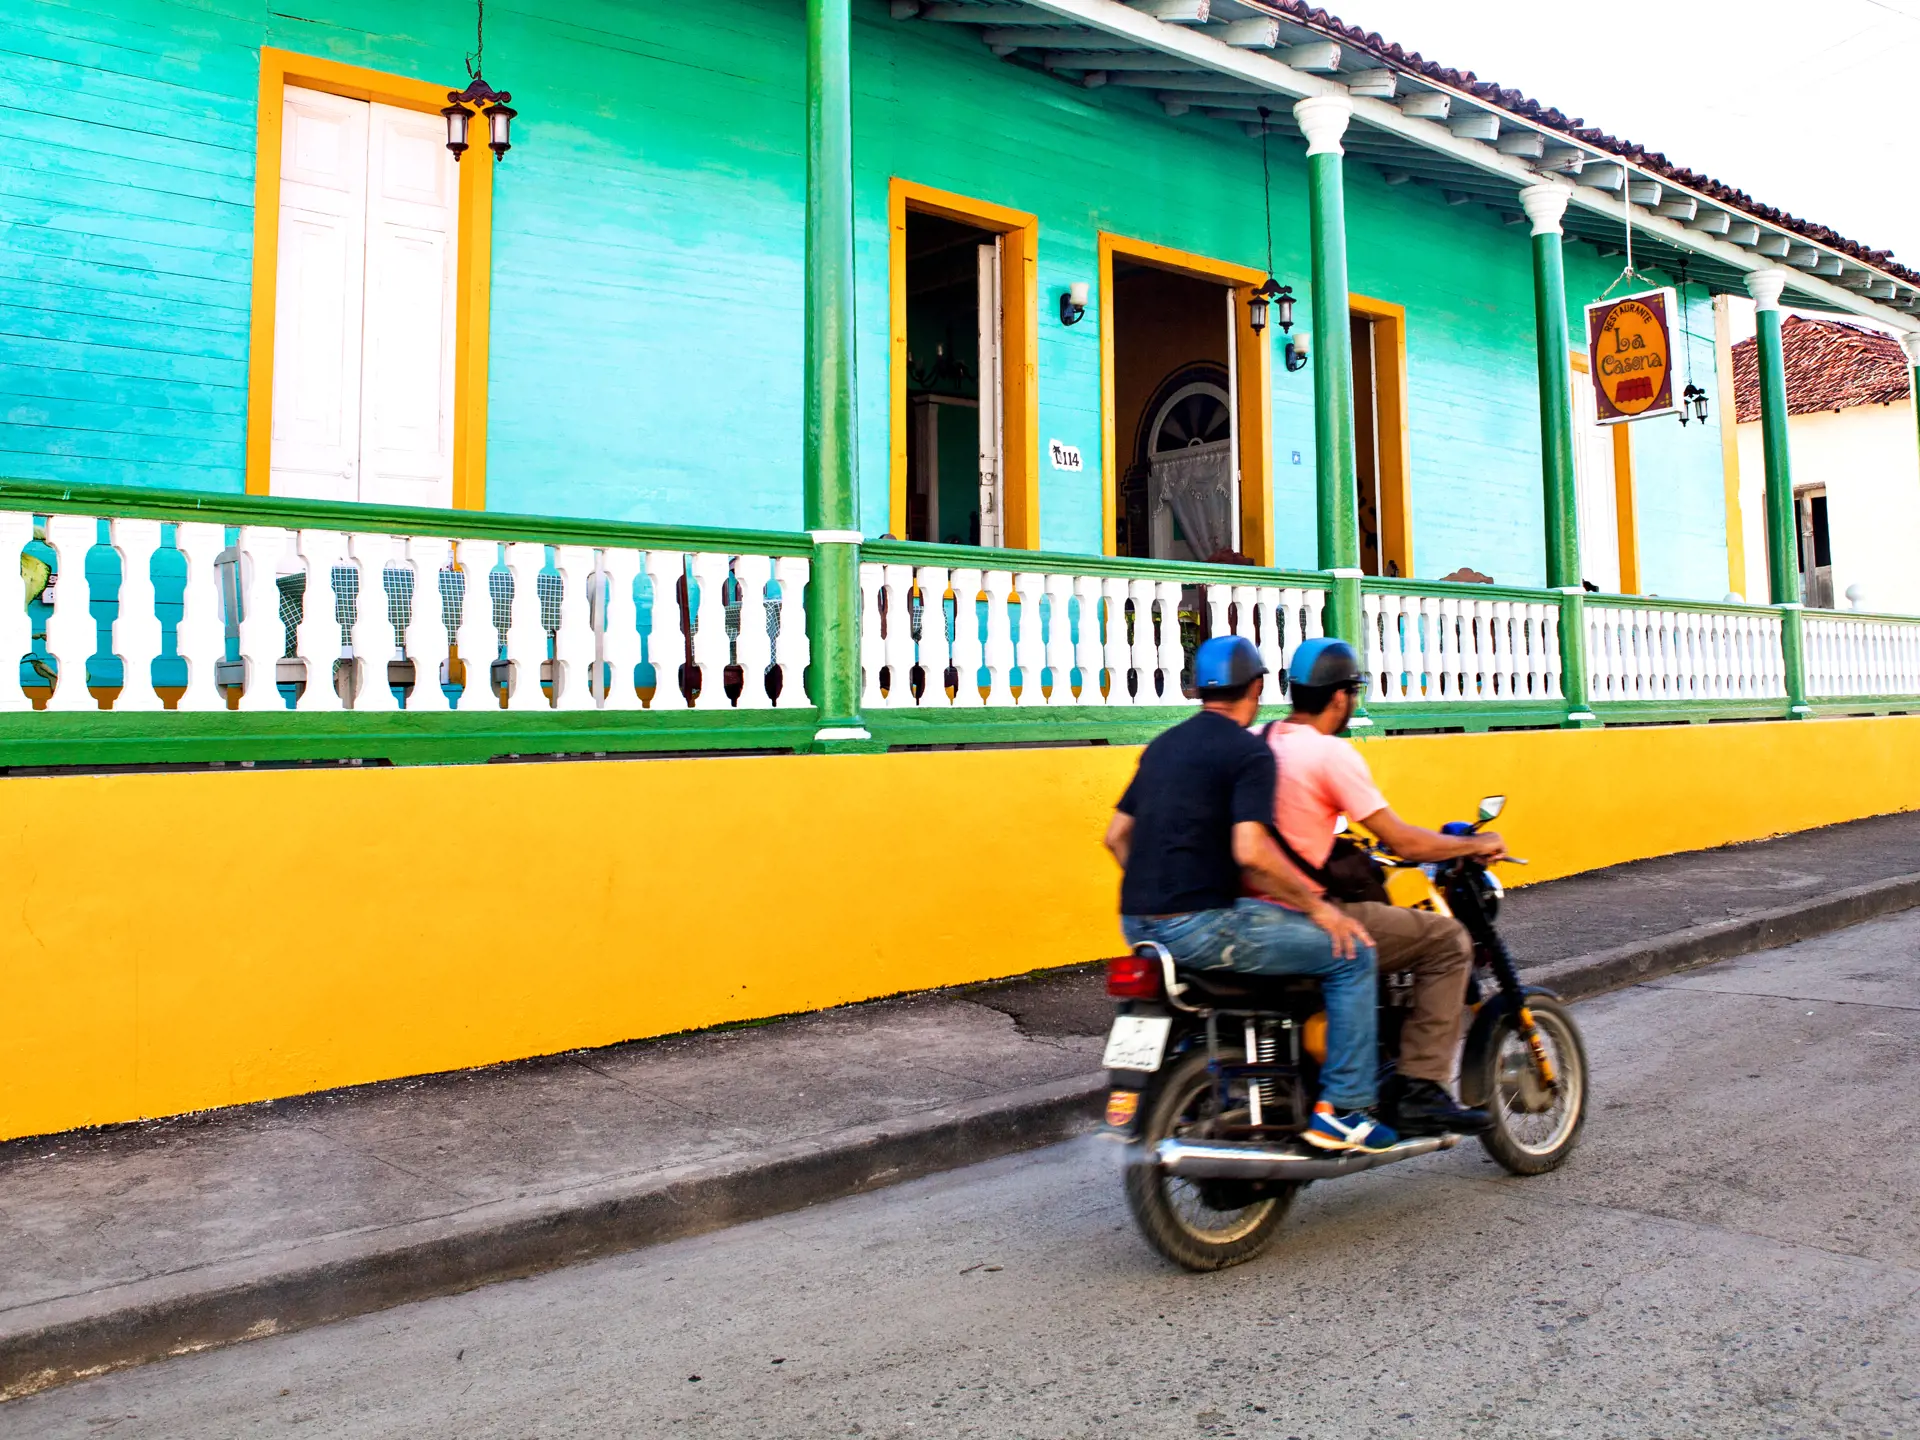 CUBAEVENTYR - Tag på denne rejse og oplev nogle af de allermest interessante og uturistede steder i det østlige Cuba.